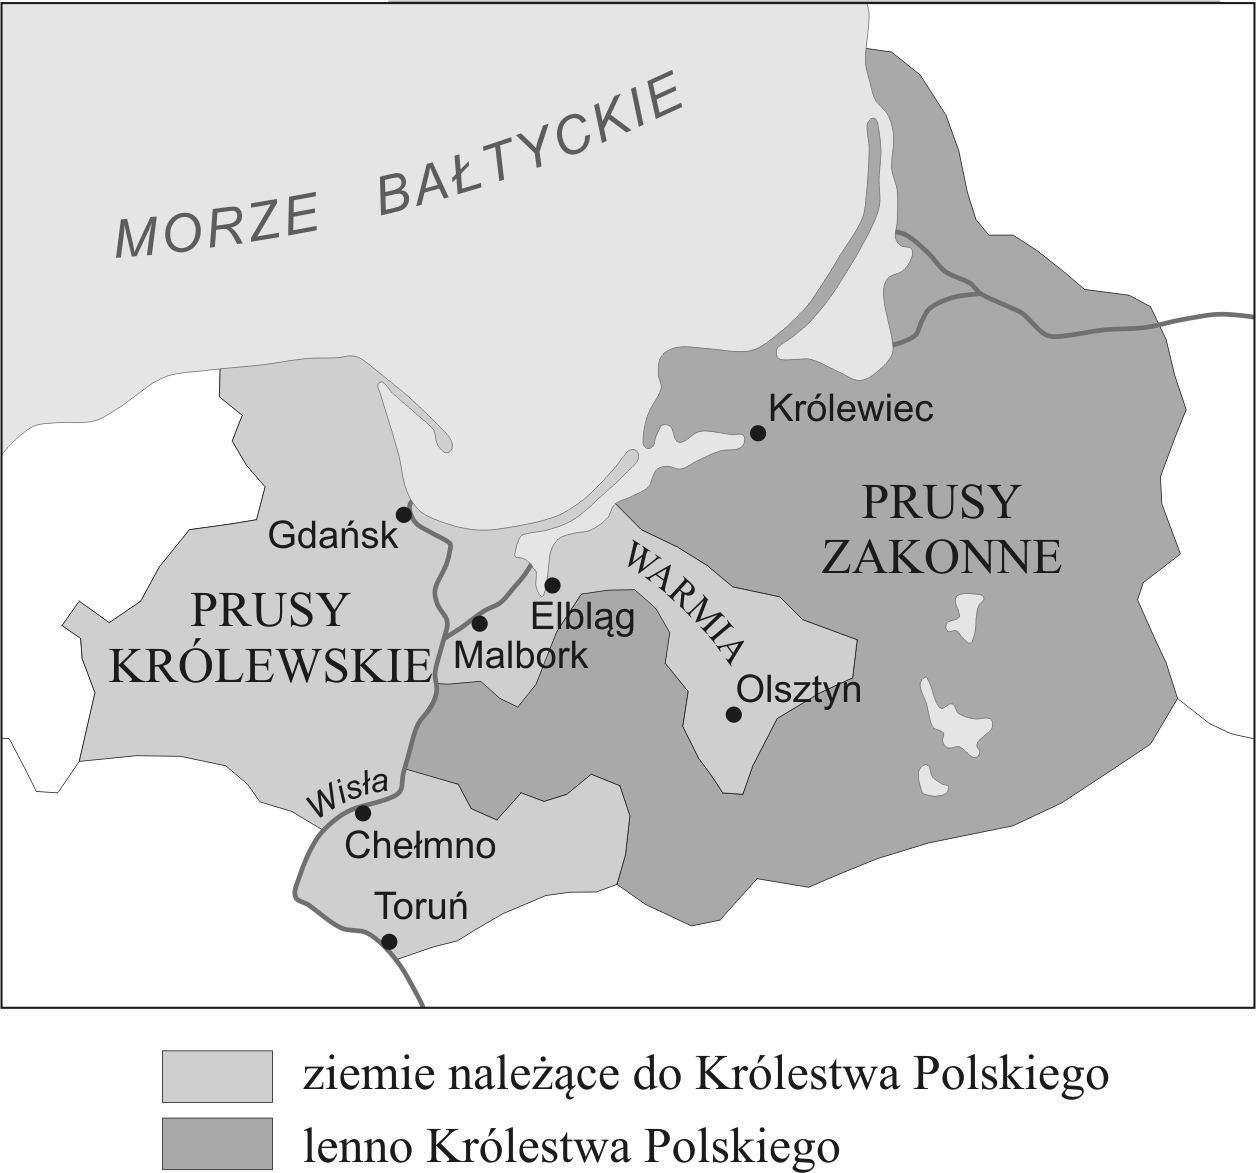 Taśma chronologiczna i mapa do zadania 6. Na podstawie: A. Dybkowska, J. Żaryn, M. Żaryn, Polskie dzieje od czasów najdawniejszych do współczesności, Warszawa 2007.